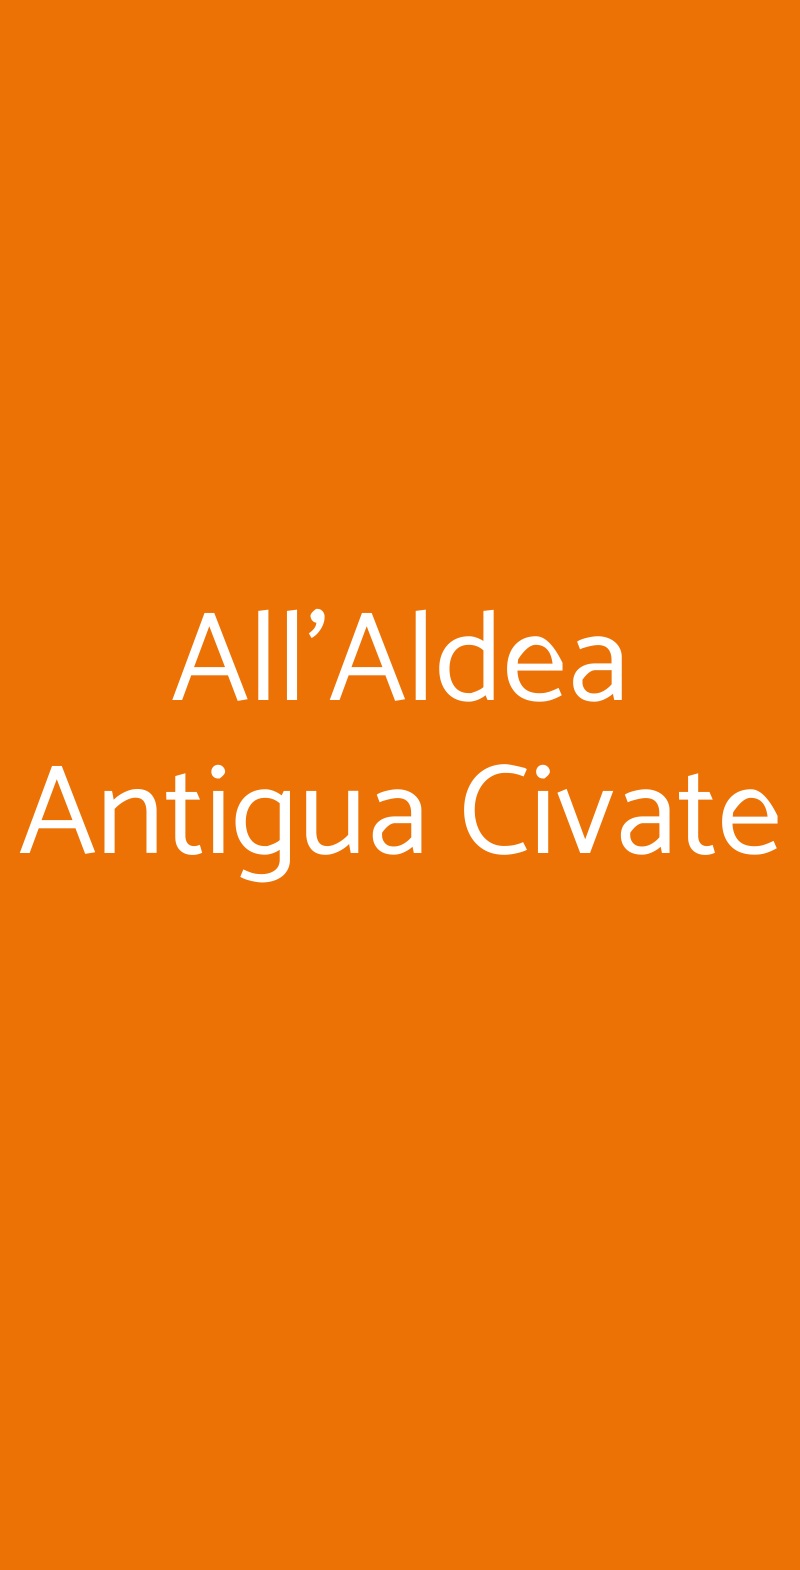 All'Aldea Antigua Civate Valmadrera menù 1 pagina